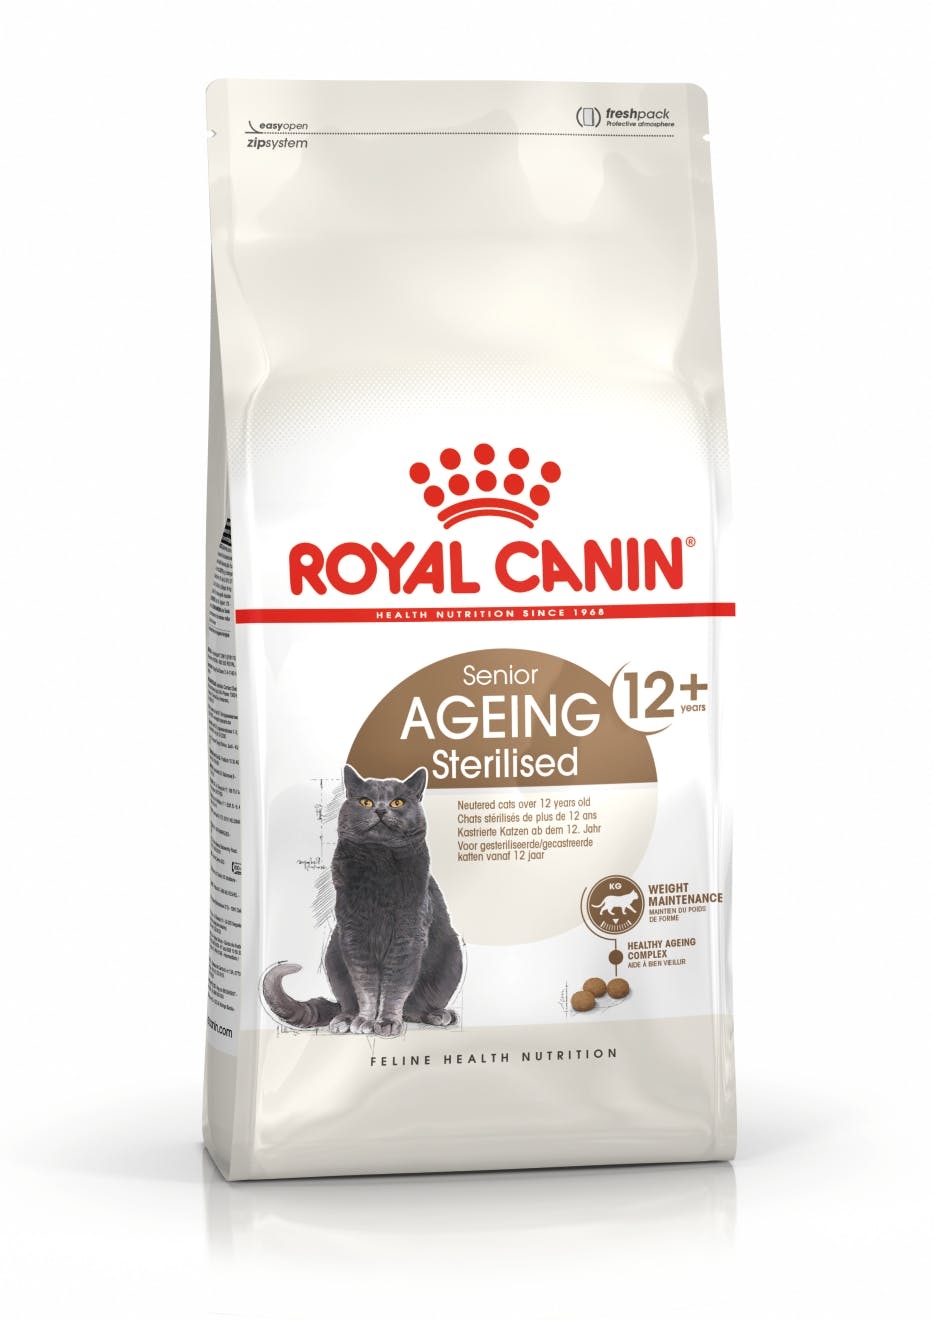 Billede af Royal Canin Ageint 12+ Sterilised. Til steriliserede/kastrerede katte over 12 år